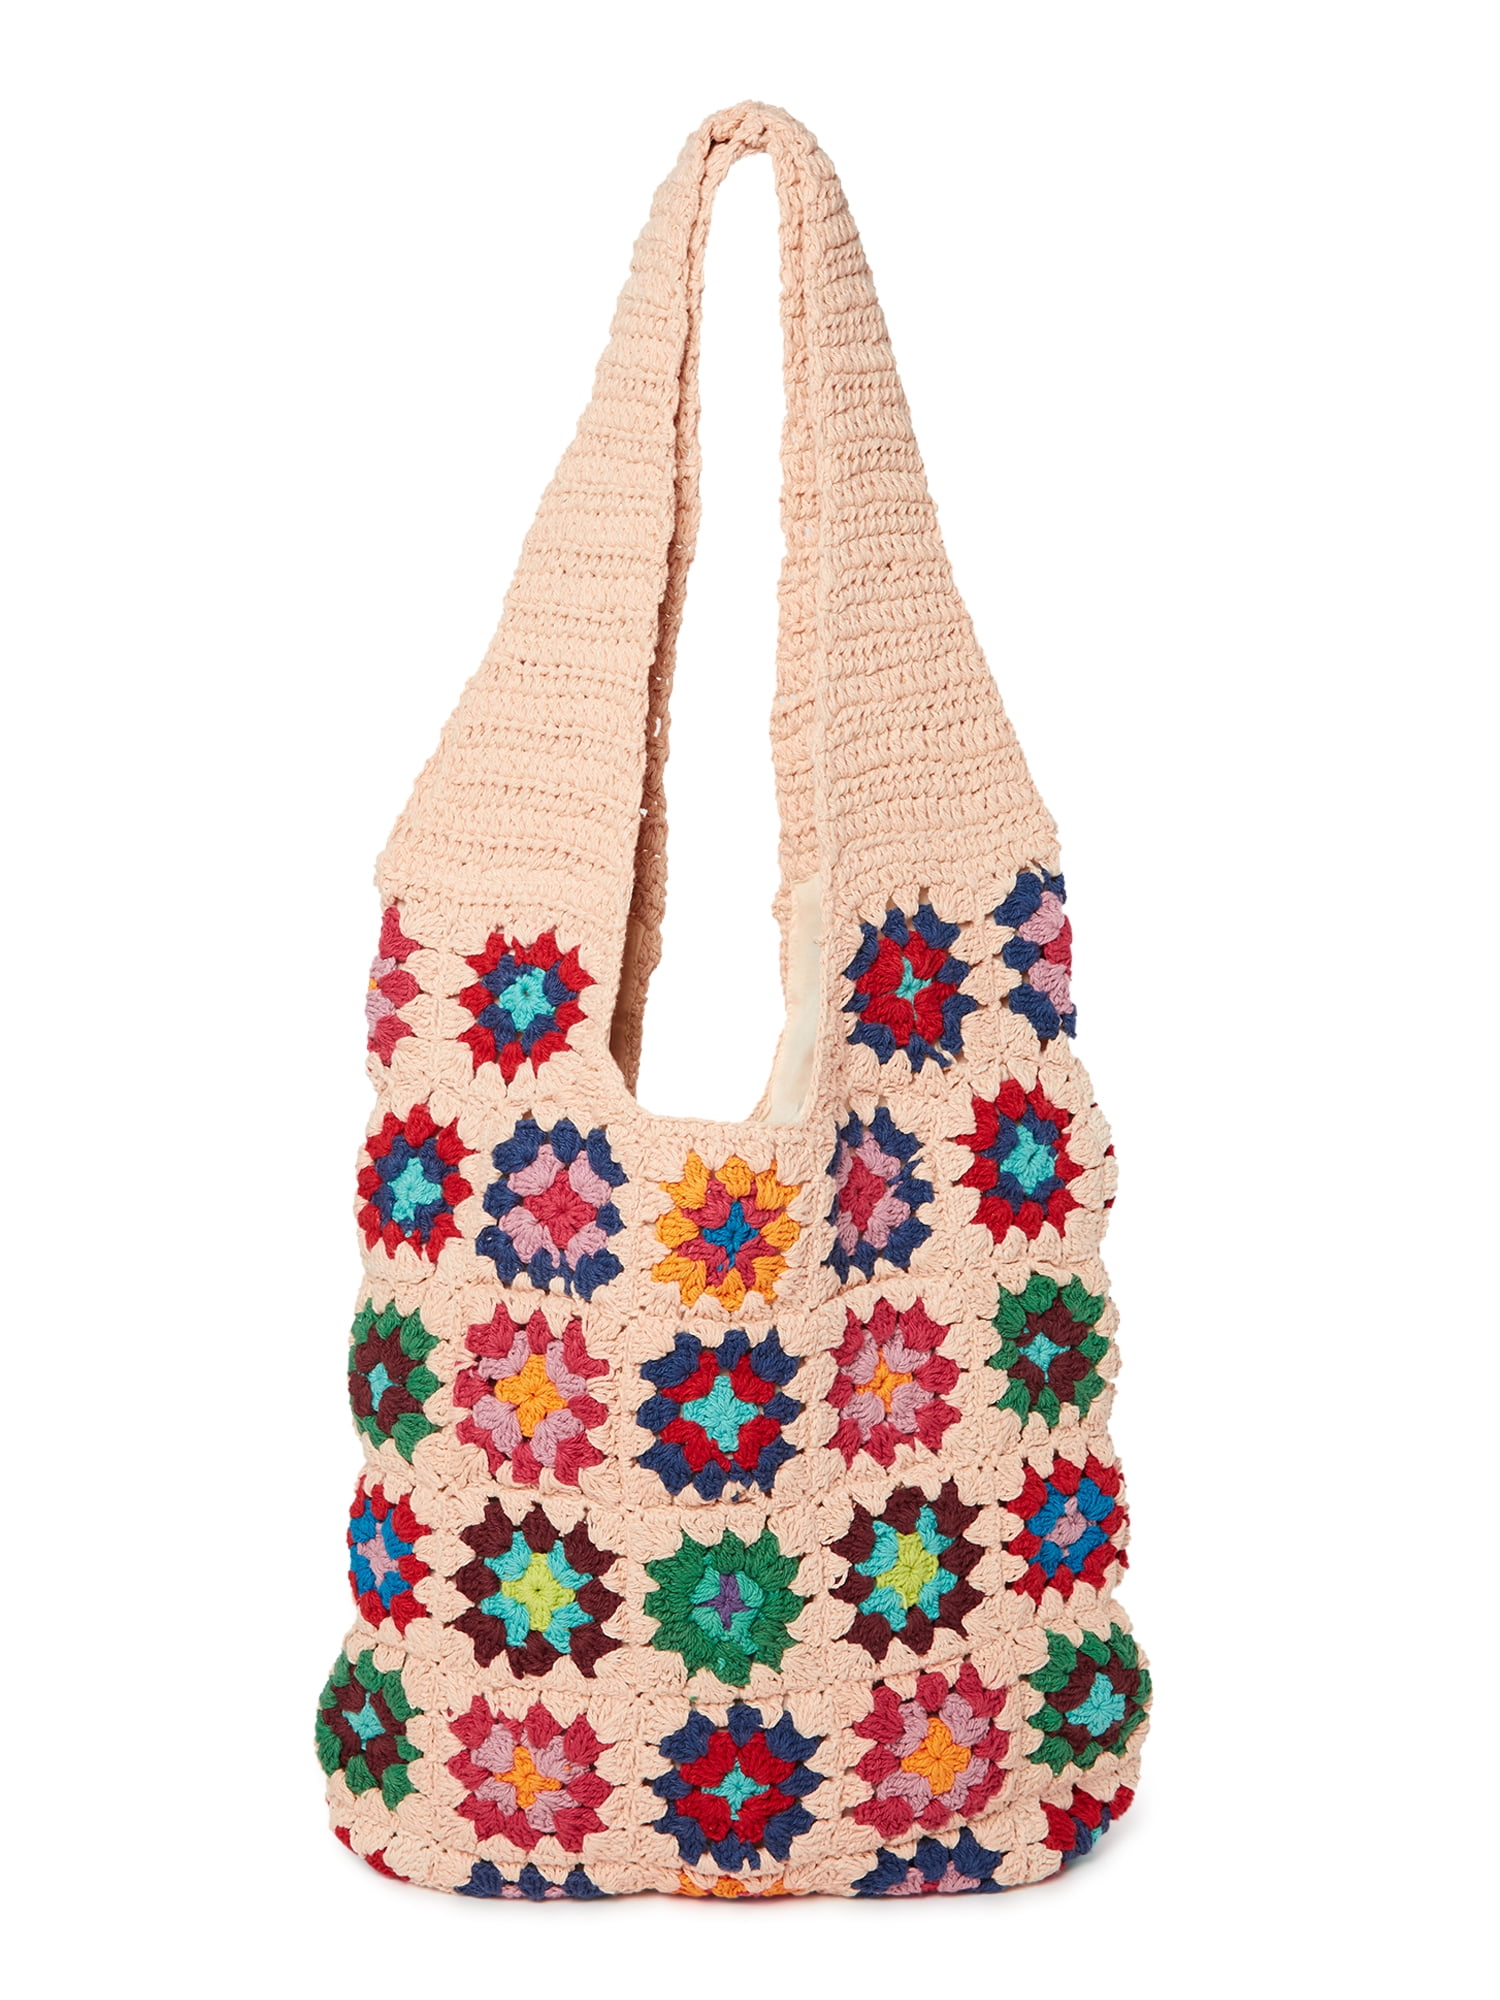 Handmade crochet handbag crochet purse shoulder bag Women handbag.